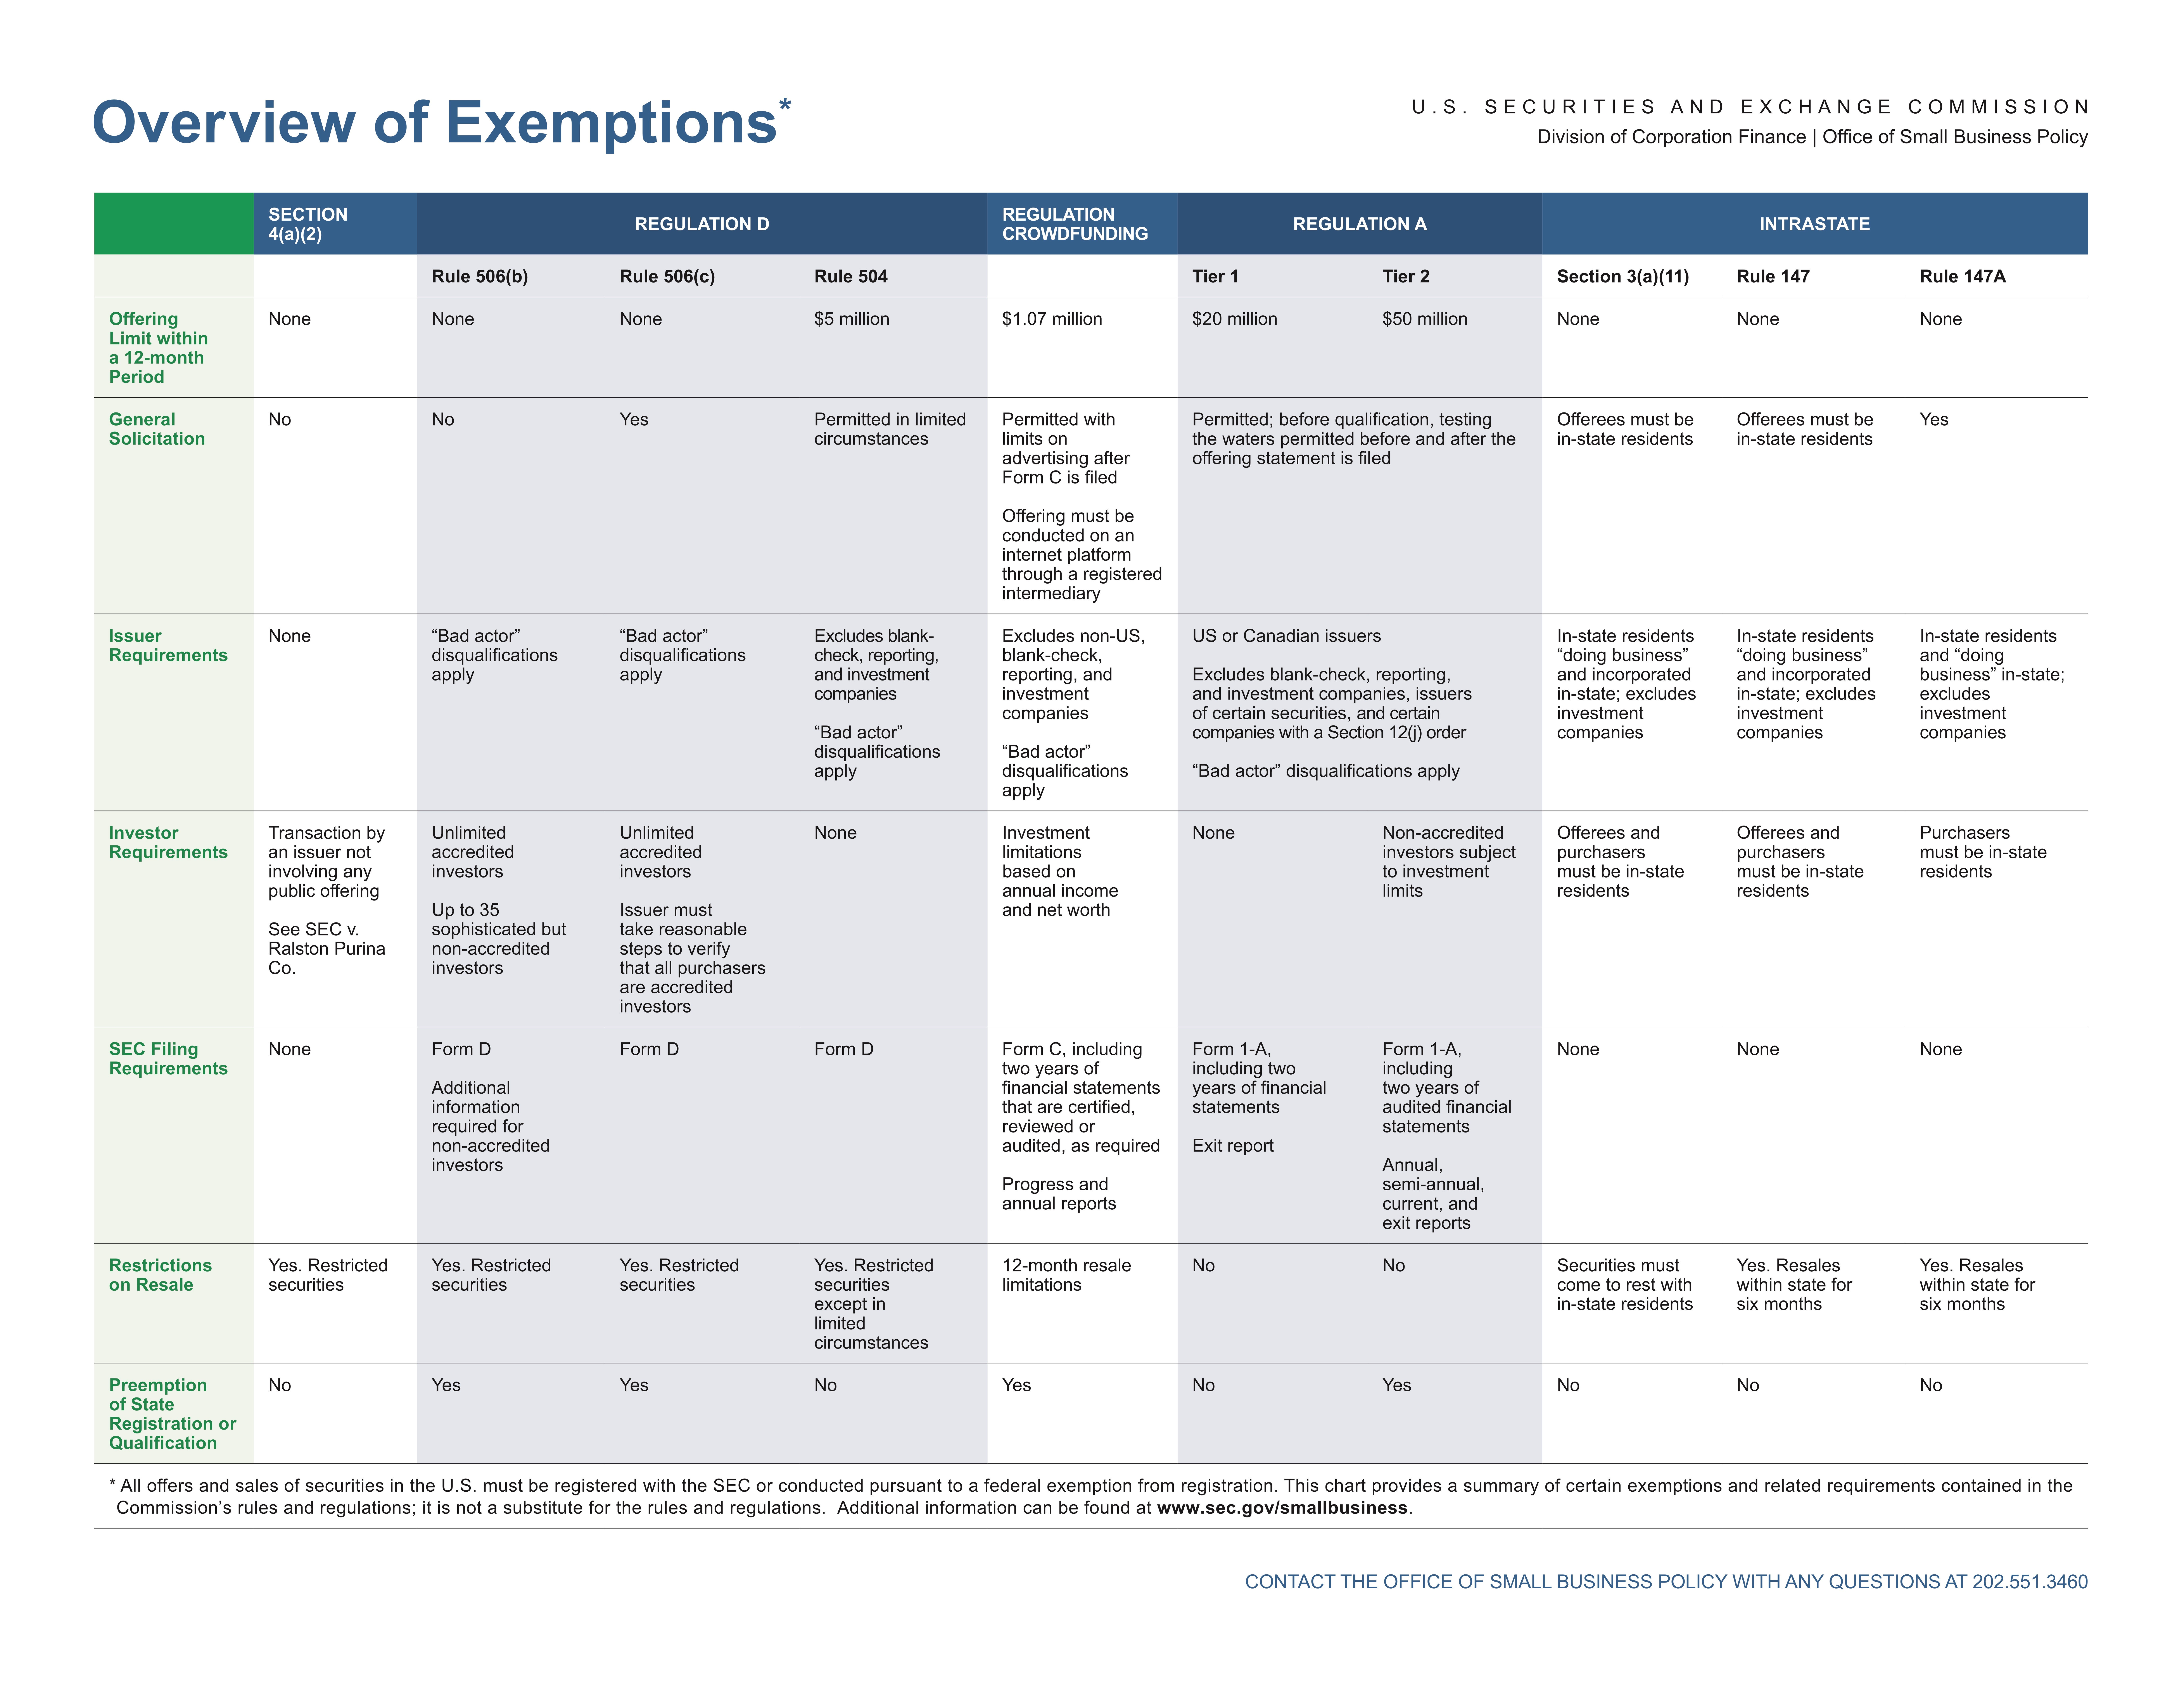 Regulation D Exemption Chart